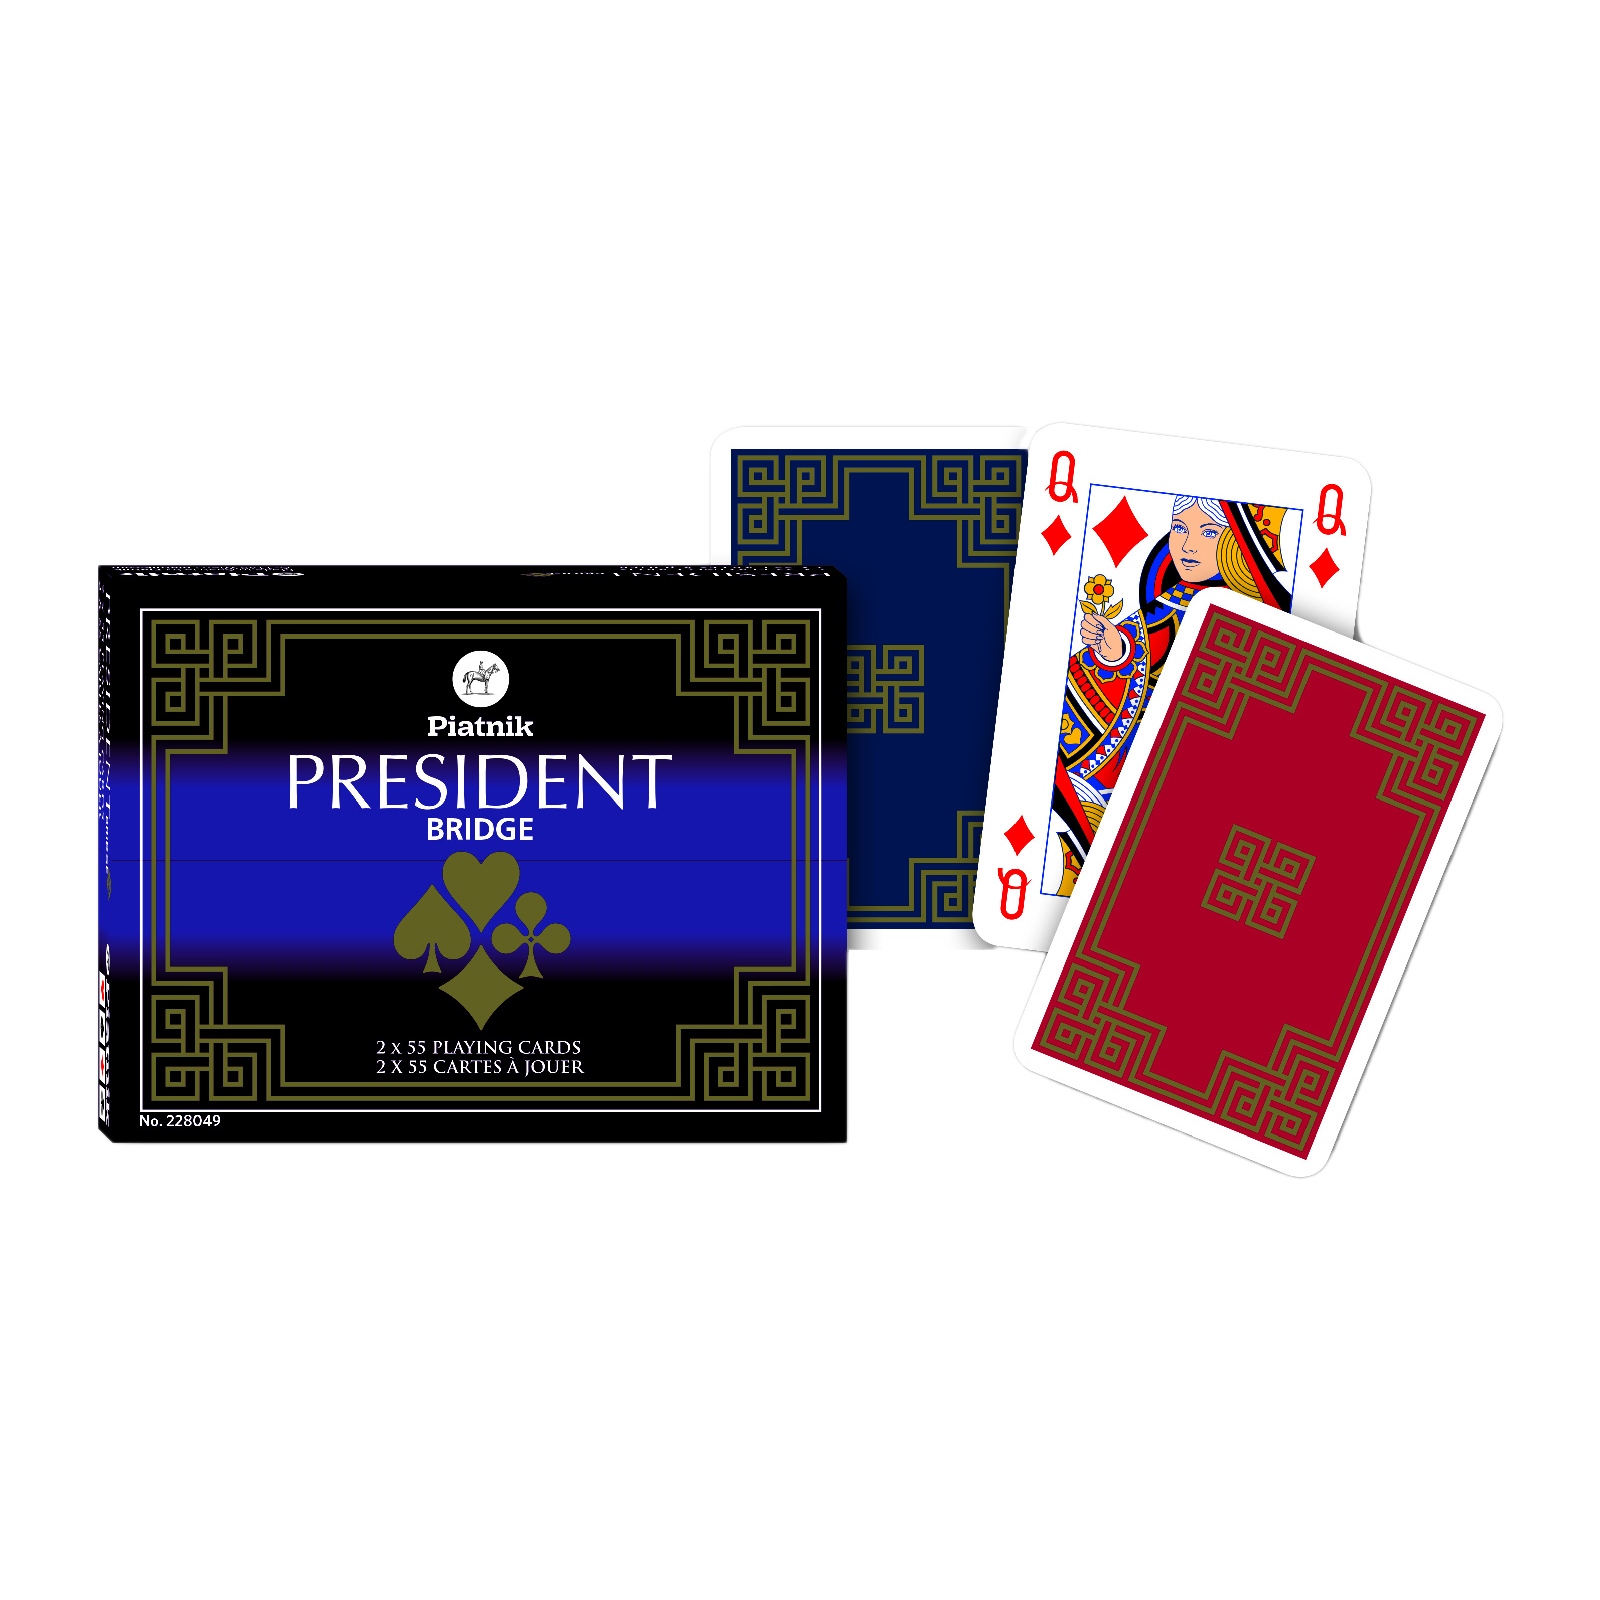 Гральні карти Piatnik Президент, 2 колоди х 55 карт (PT-228049)